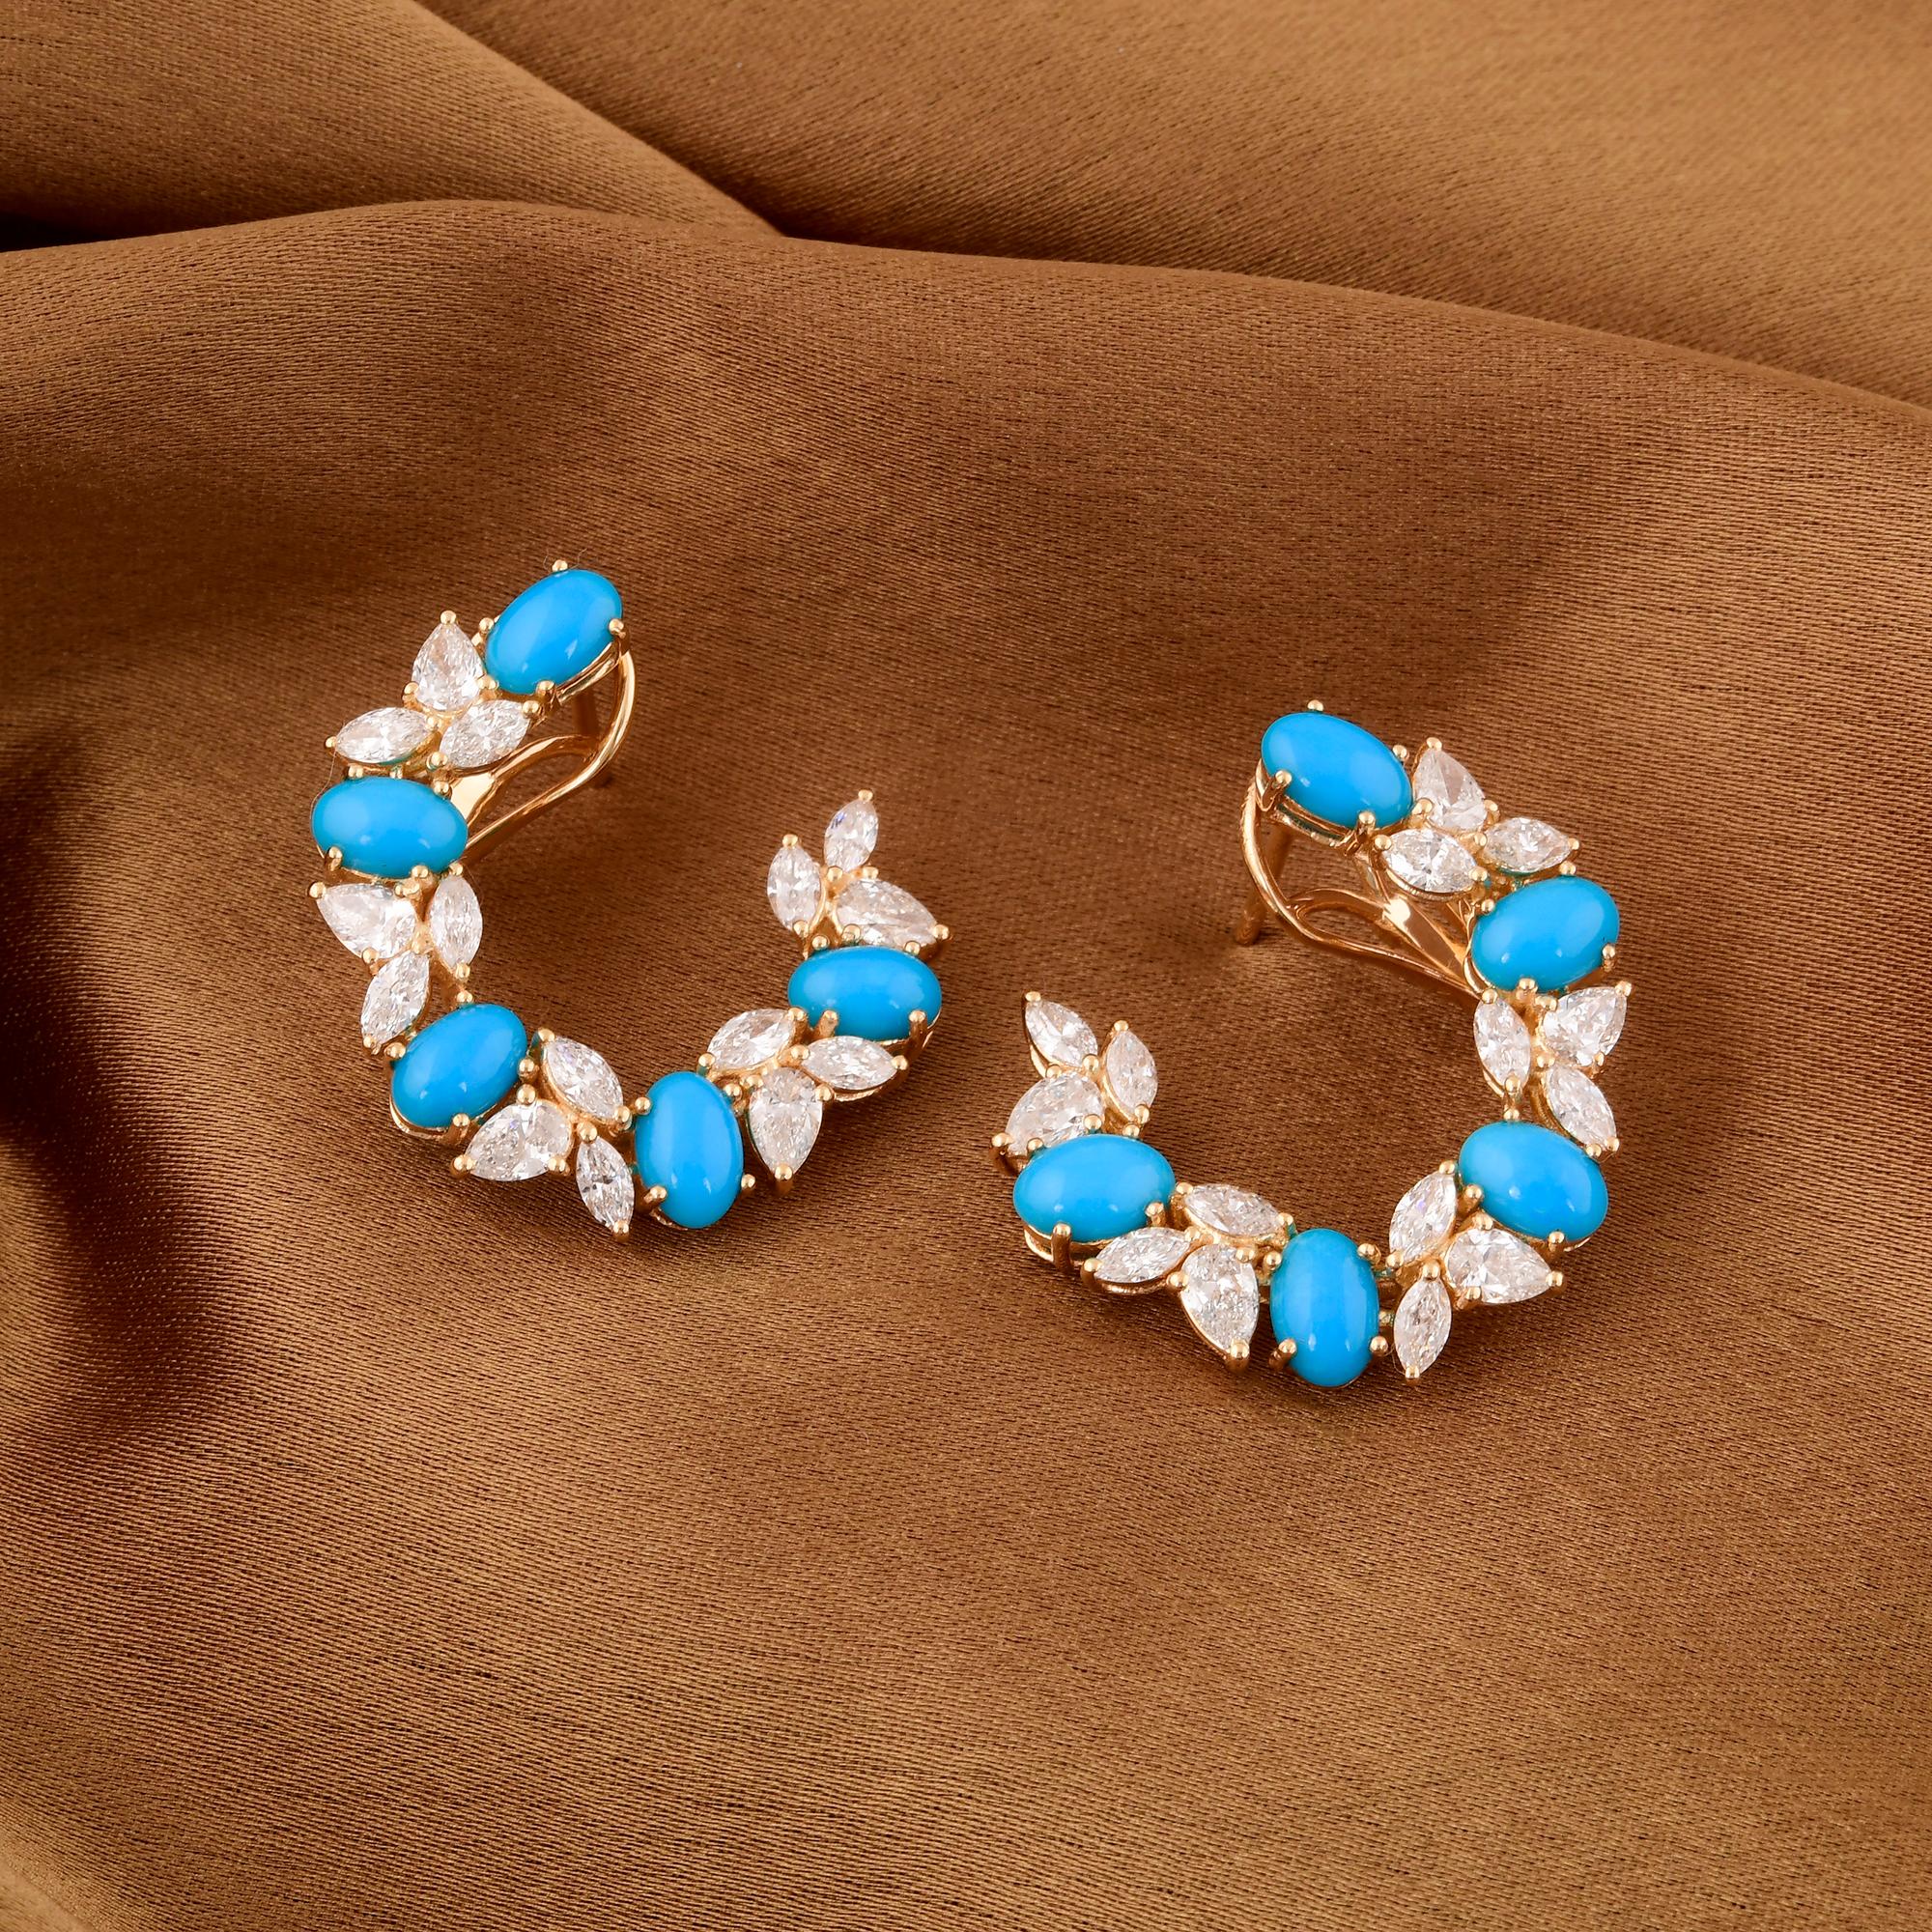 Oval Cut Oval Turquoise Gemstone Hoop Earrings Diamond 18 Karat Yellow Gold Fine Jewelry For Sale